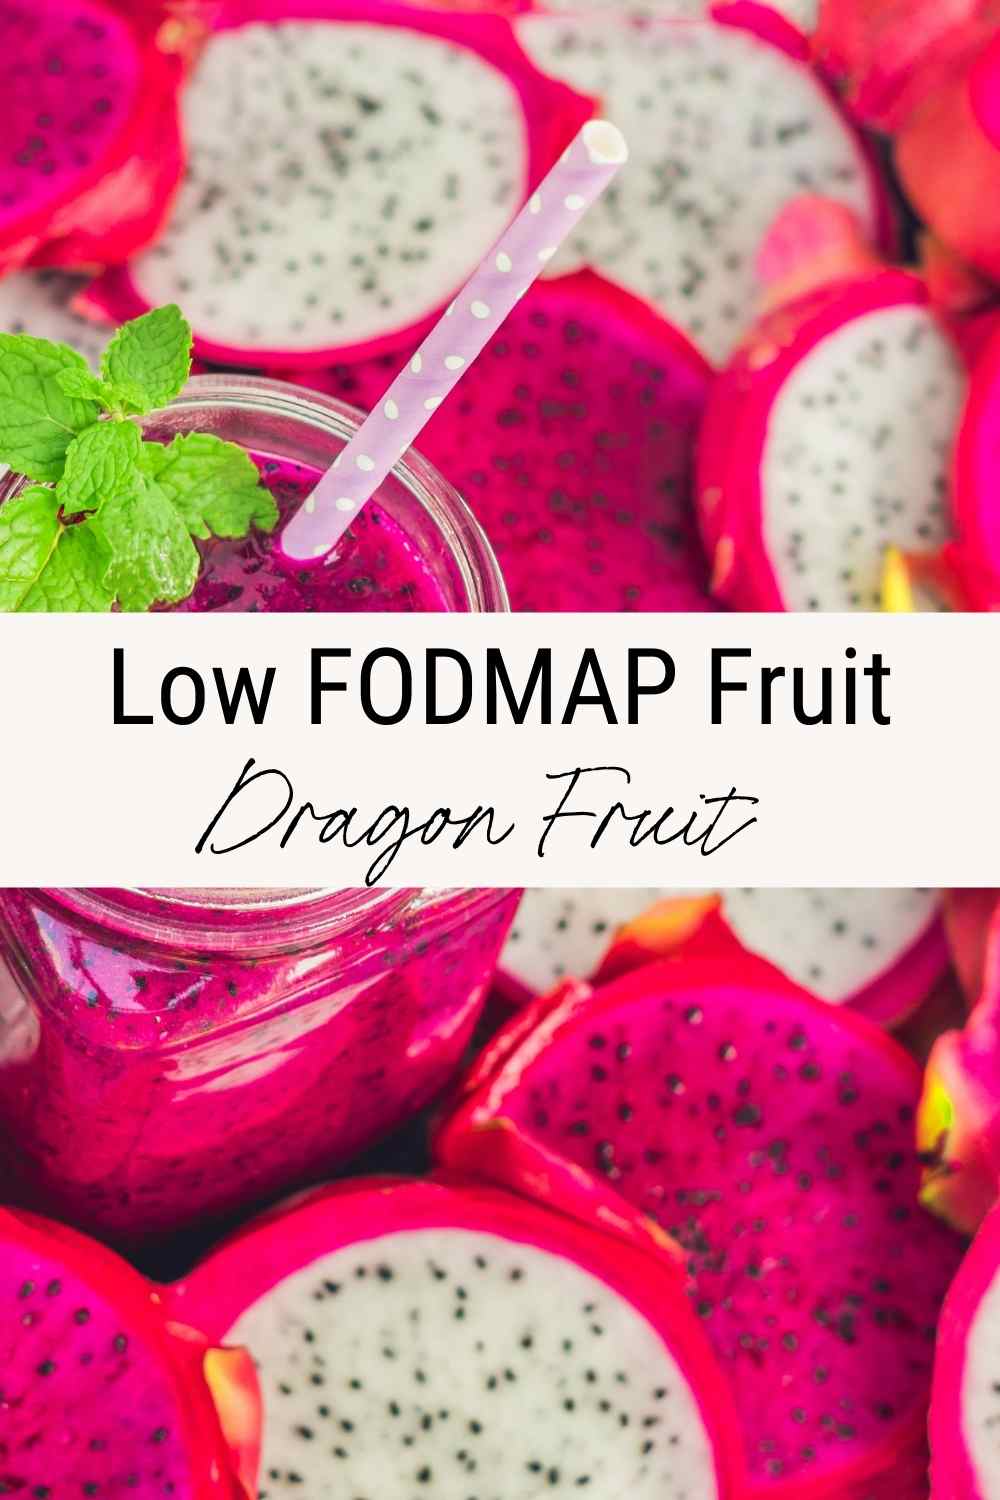 Low FODMAP dragon fruit